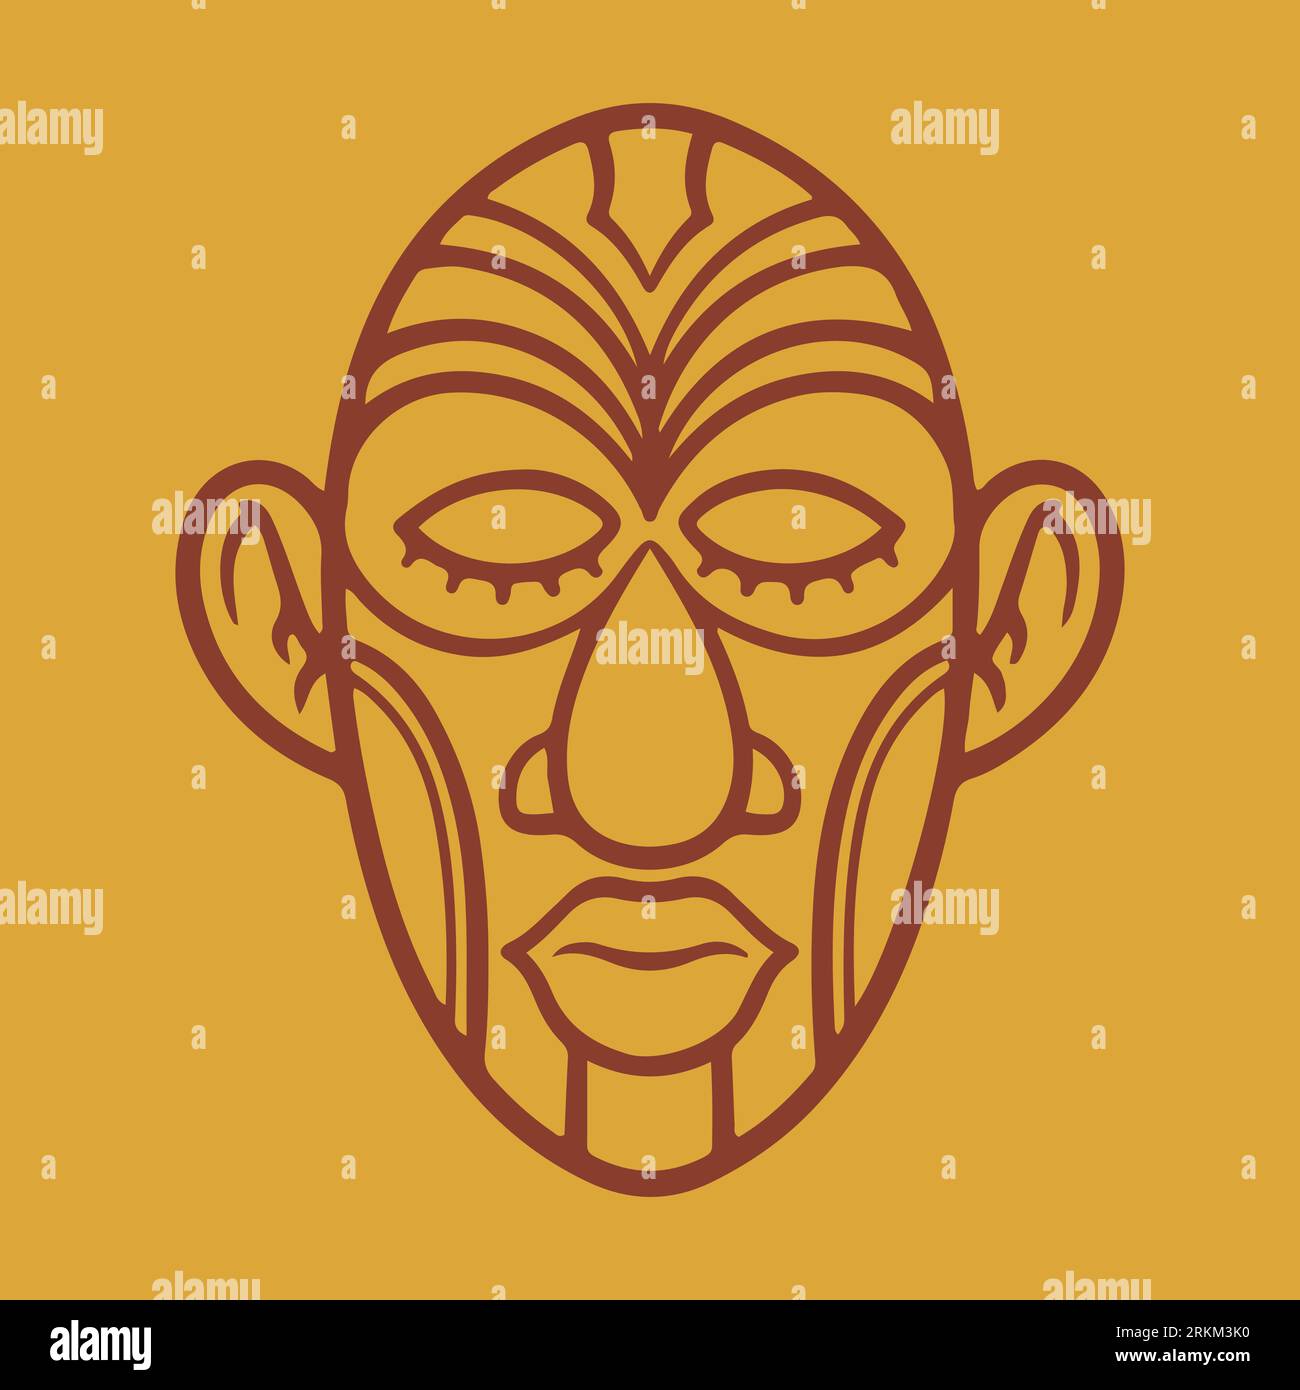 Icônes de masque ethnique ou masques plats inca. Culture ethnique aborigène. Mysticisme et magie. Illustration vectorielle de masques ethniques tribaux Illustration de Vecteur